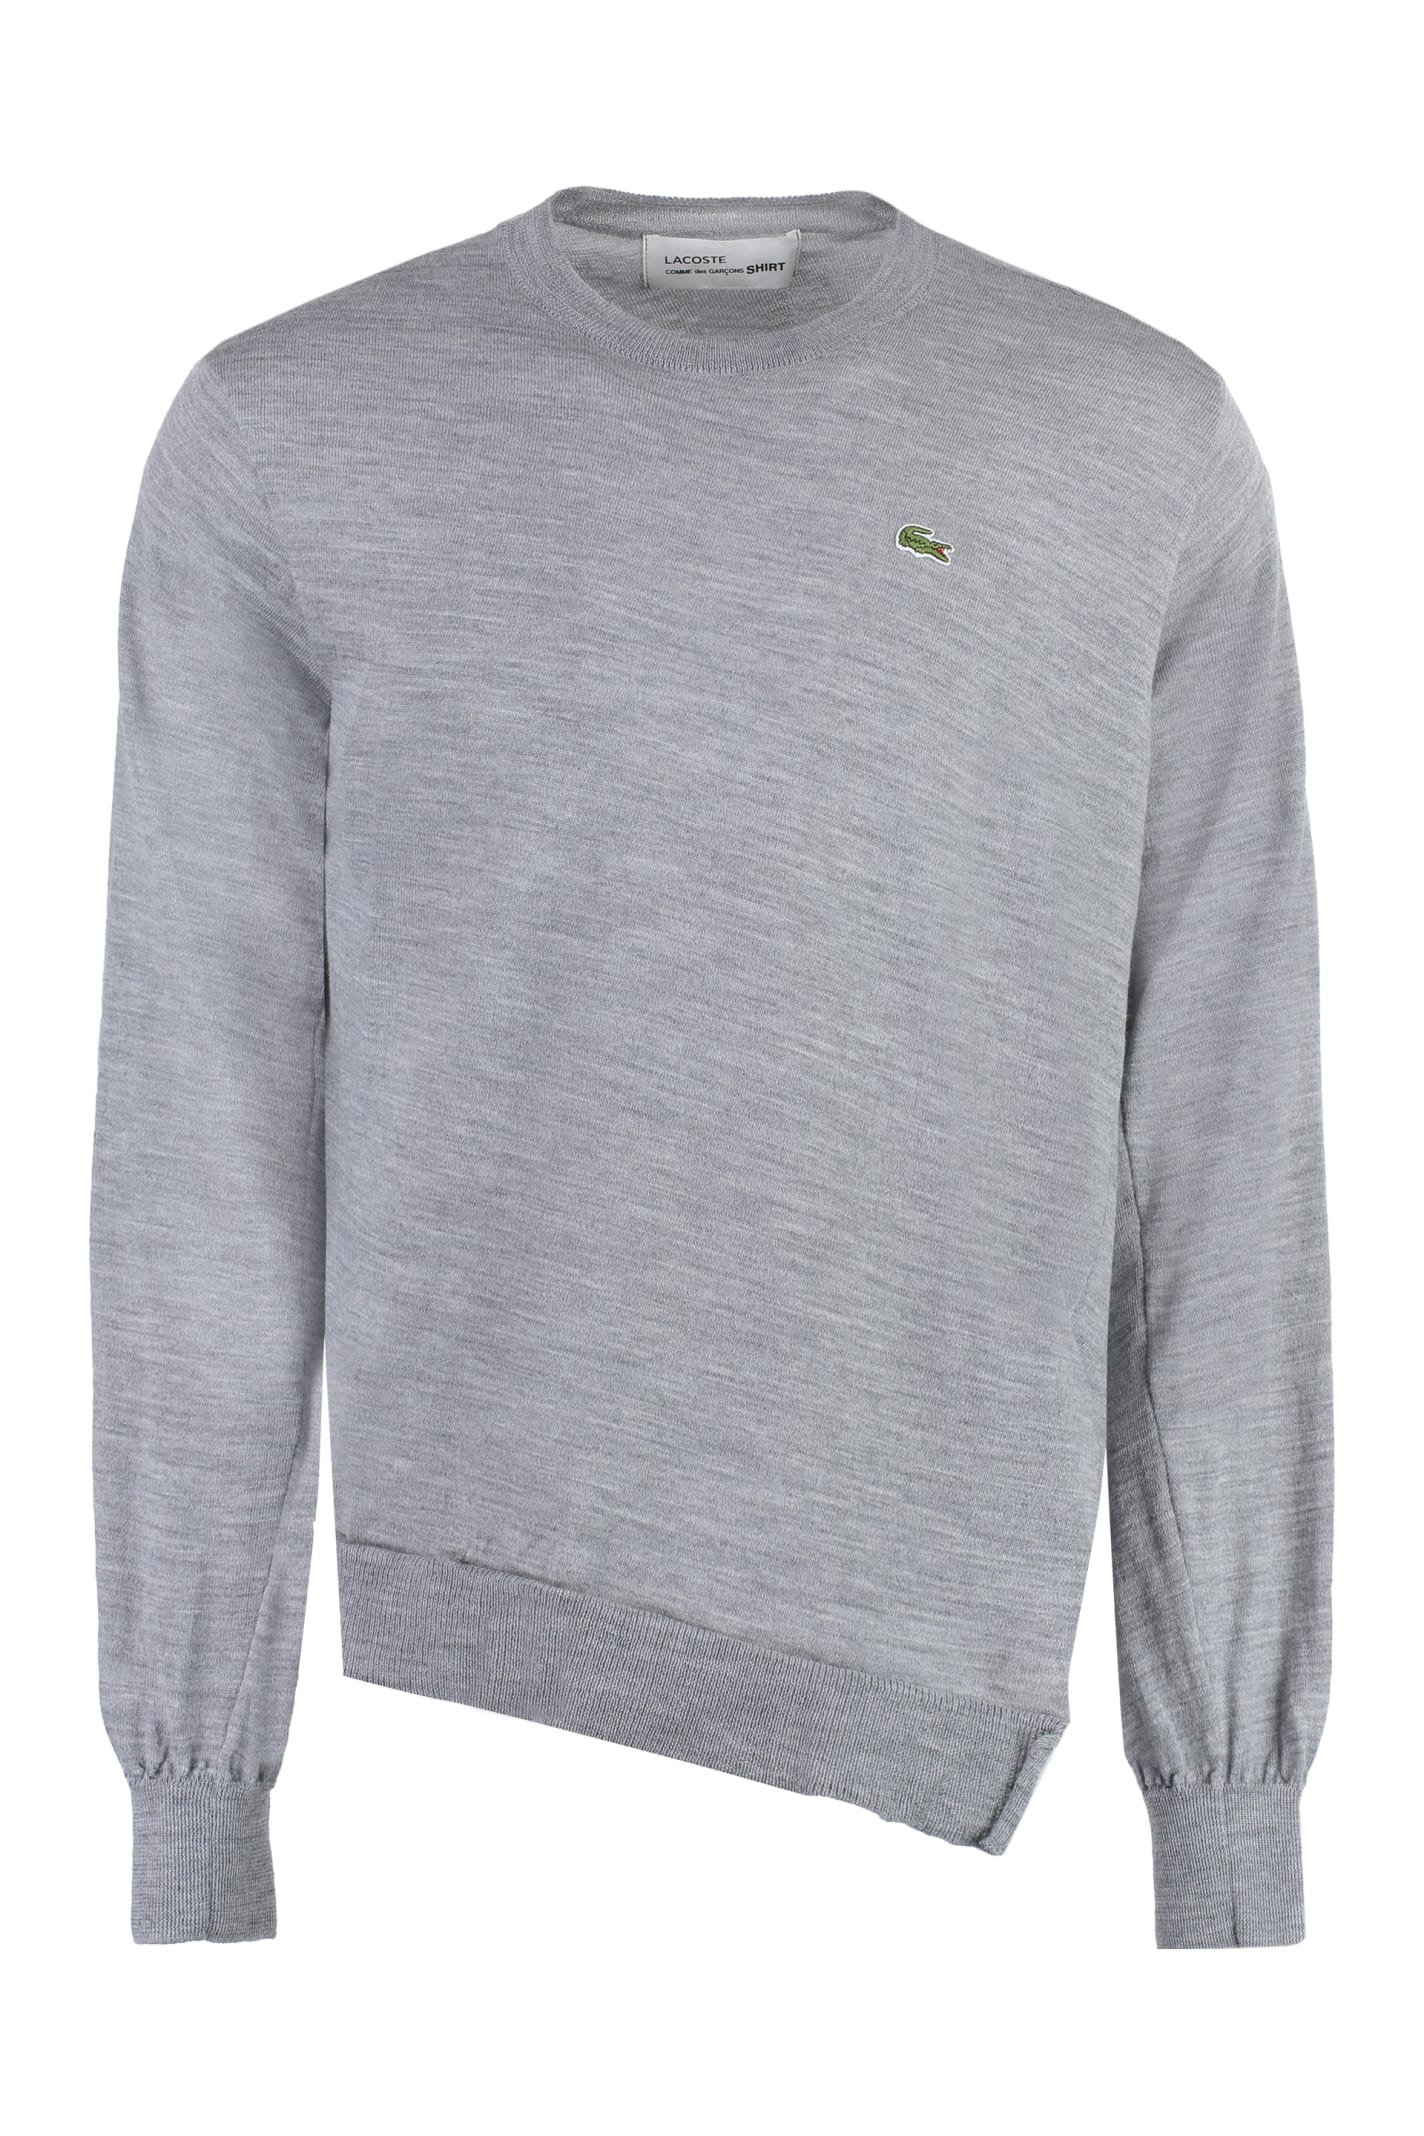 Comme Des Garçons Shirt Lacoste X Comme Des Garçons - Crew-neck Wool Sweater In Grey